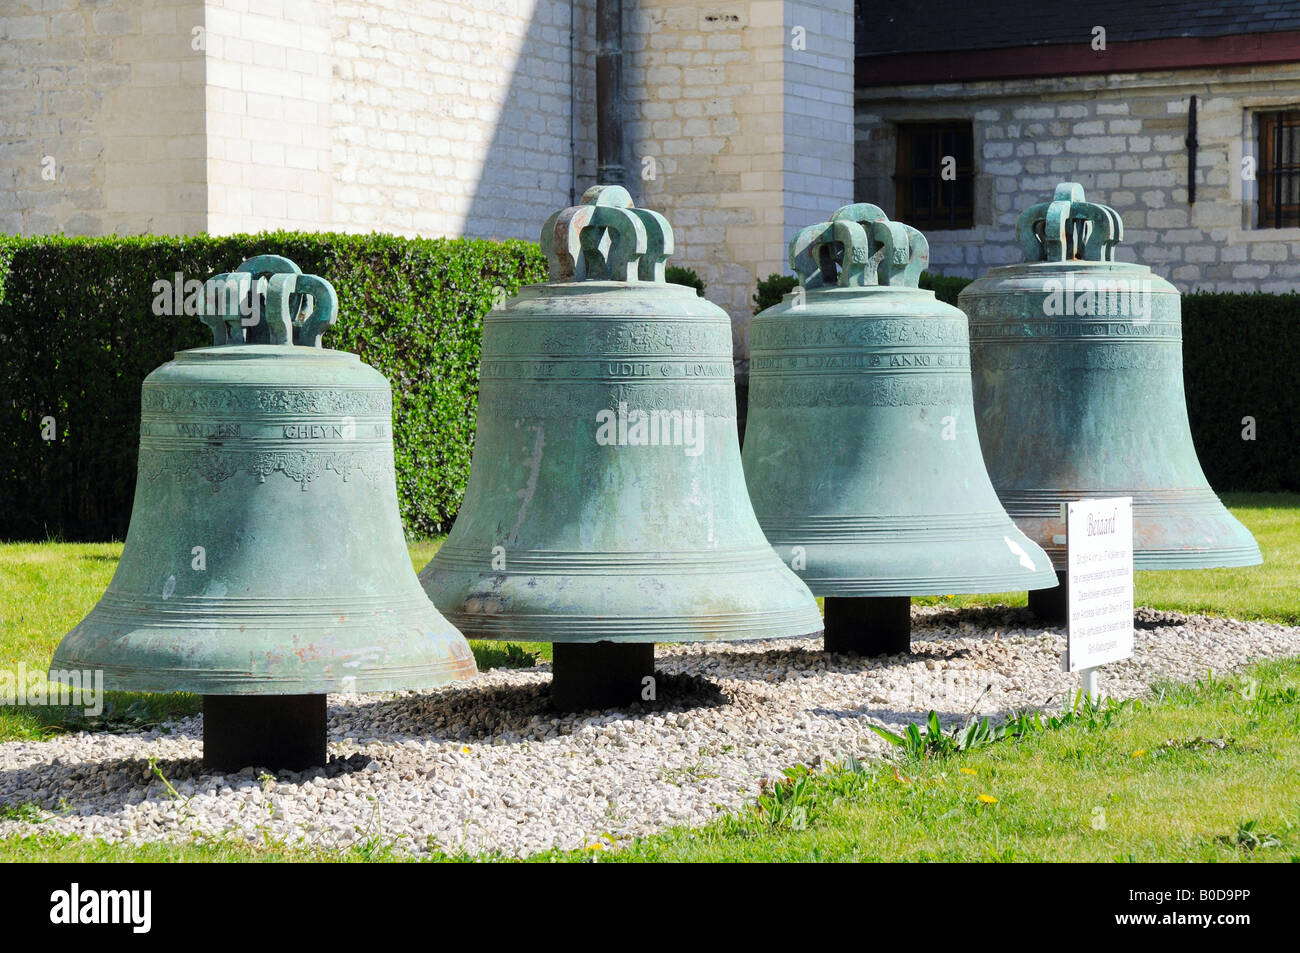 4 del 37 campane che compone il carillon (beiaard) di St Walburga Chiesa di Oudenaarde, Belgio. Foto Stock